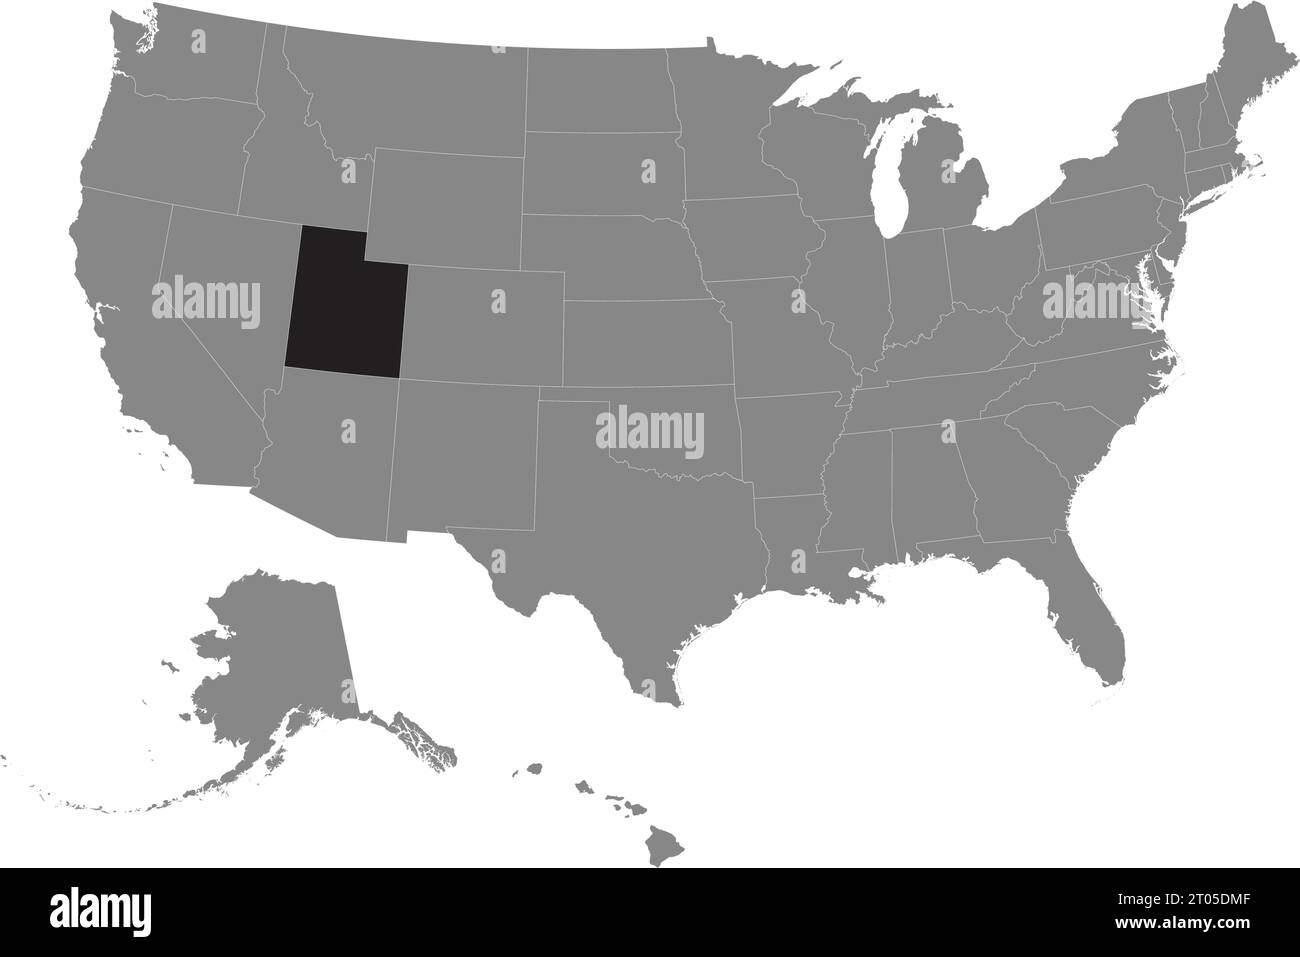 Schwarze CMYK-Bundeskarte von UTAH in detaillierter grauer, leerer politischer Karte der Vereinigten Staaten von Amerika auf transparentem Hintergrund Stock Vektor